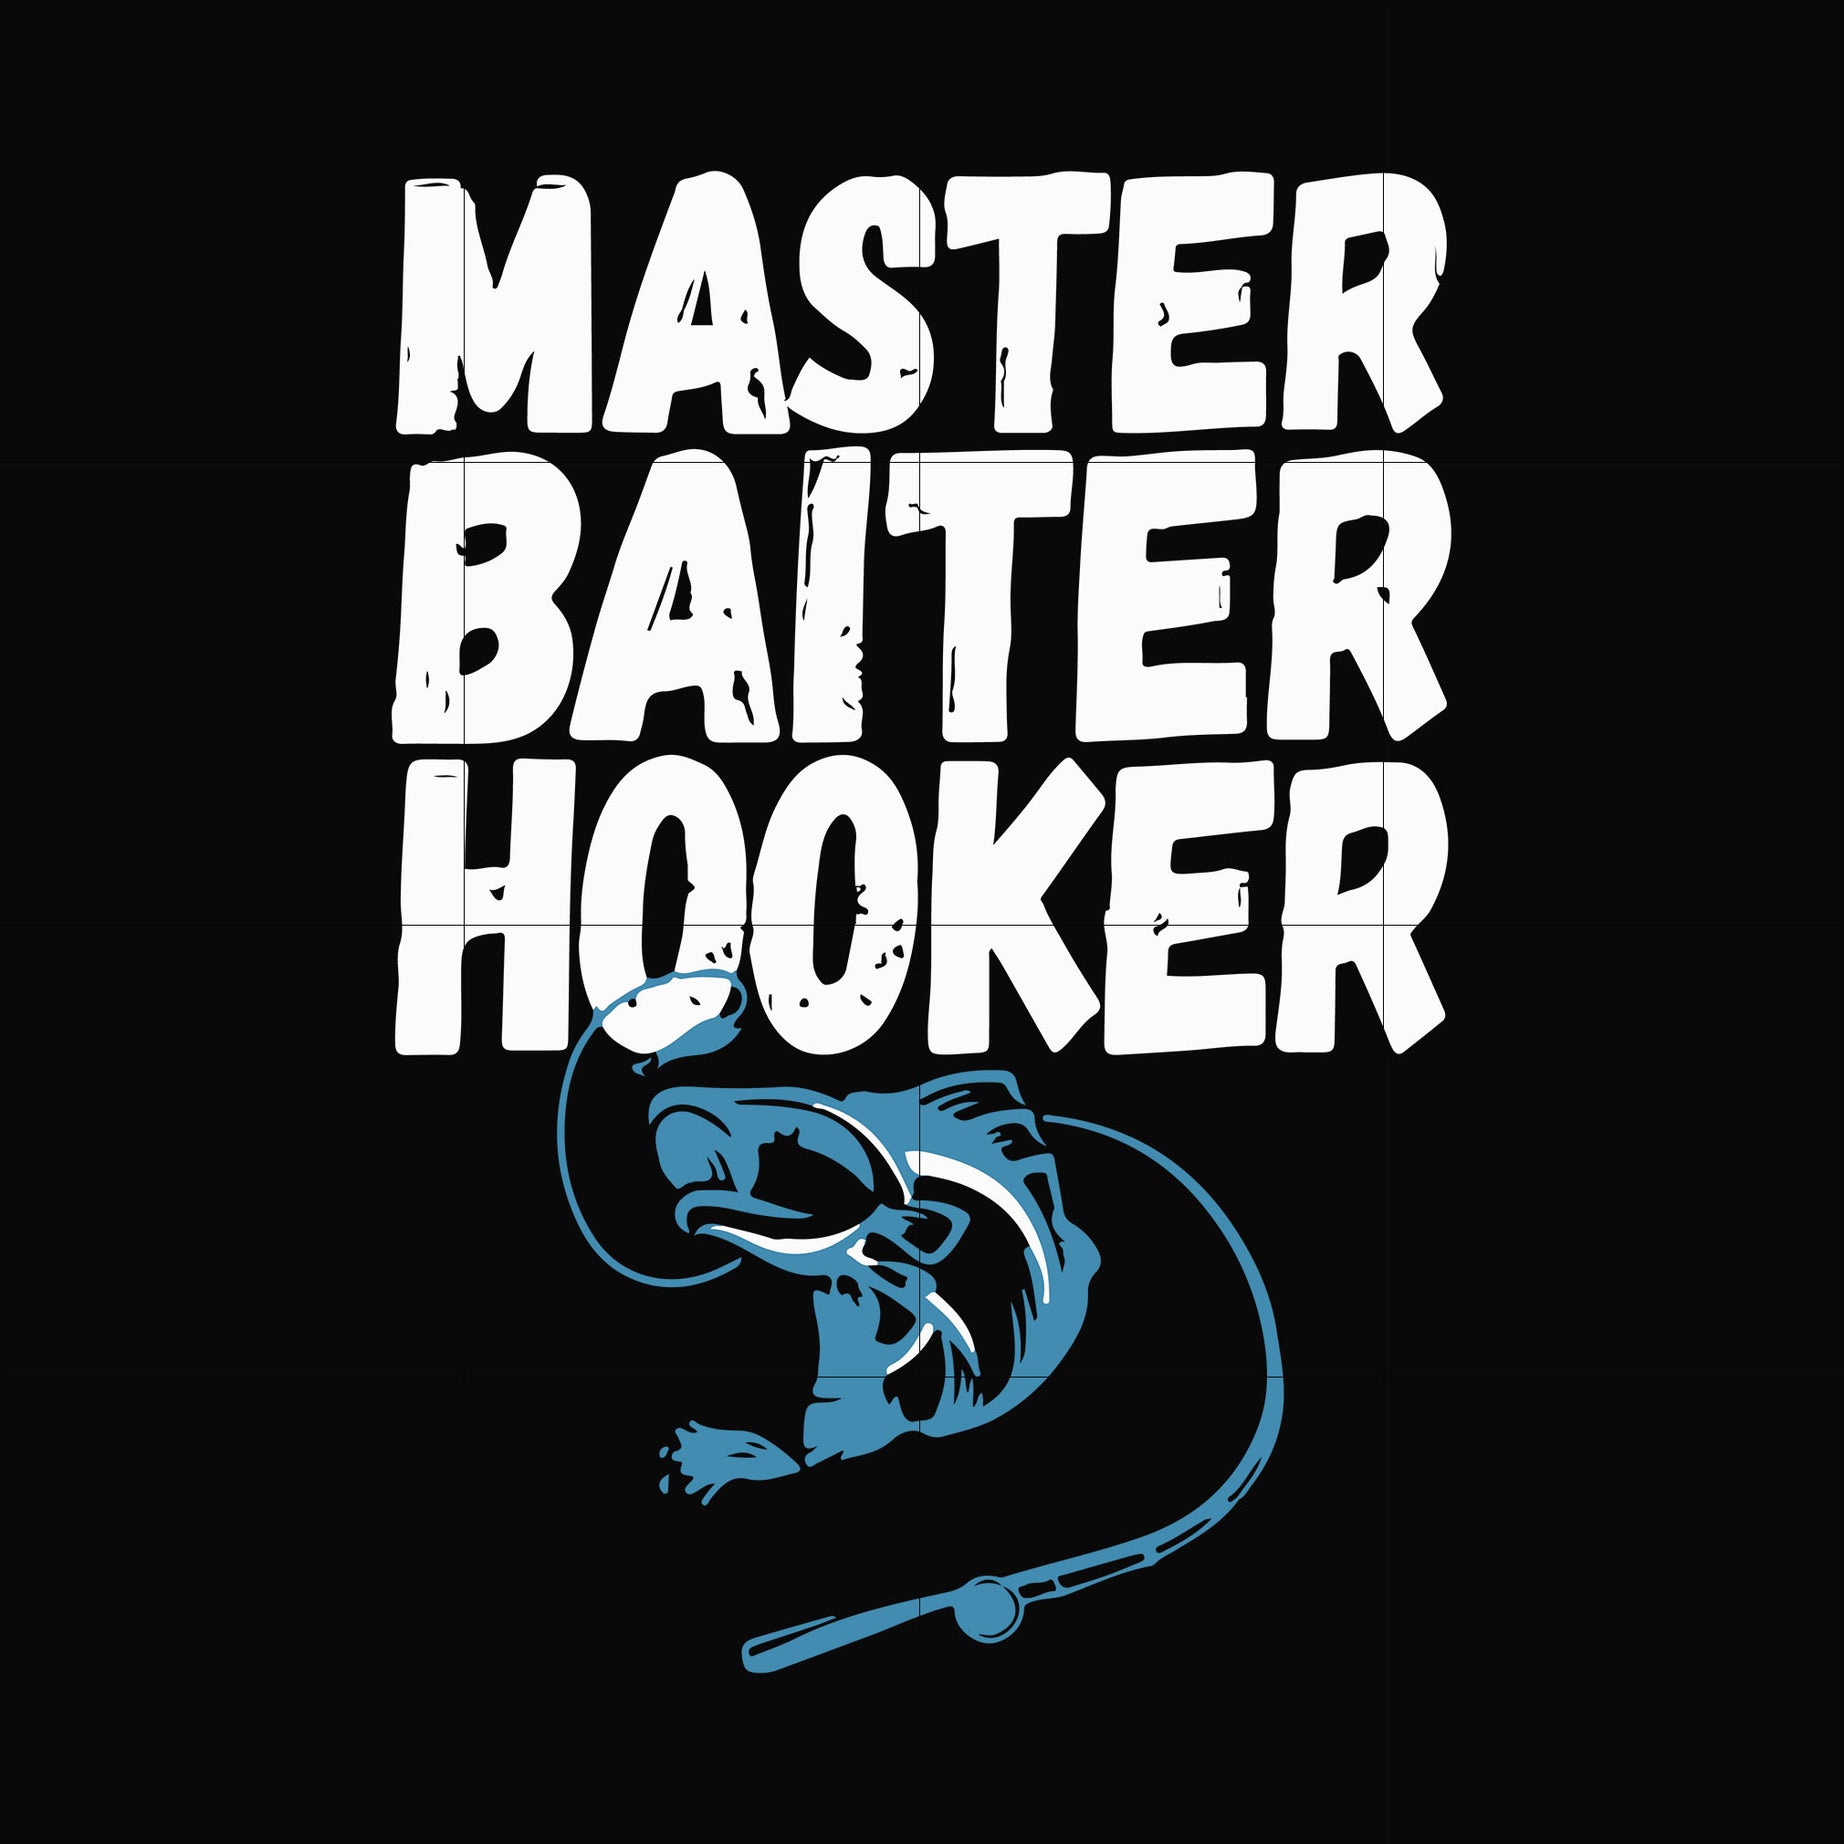 Master baiter hooker svg, png, dxf, eps digital file OTH0072